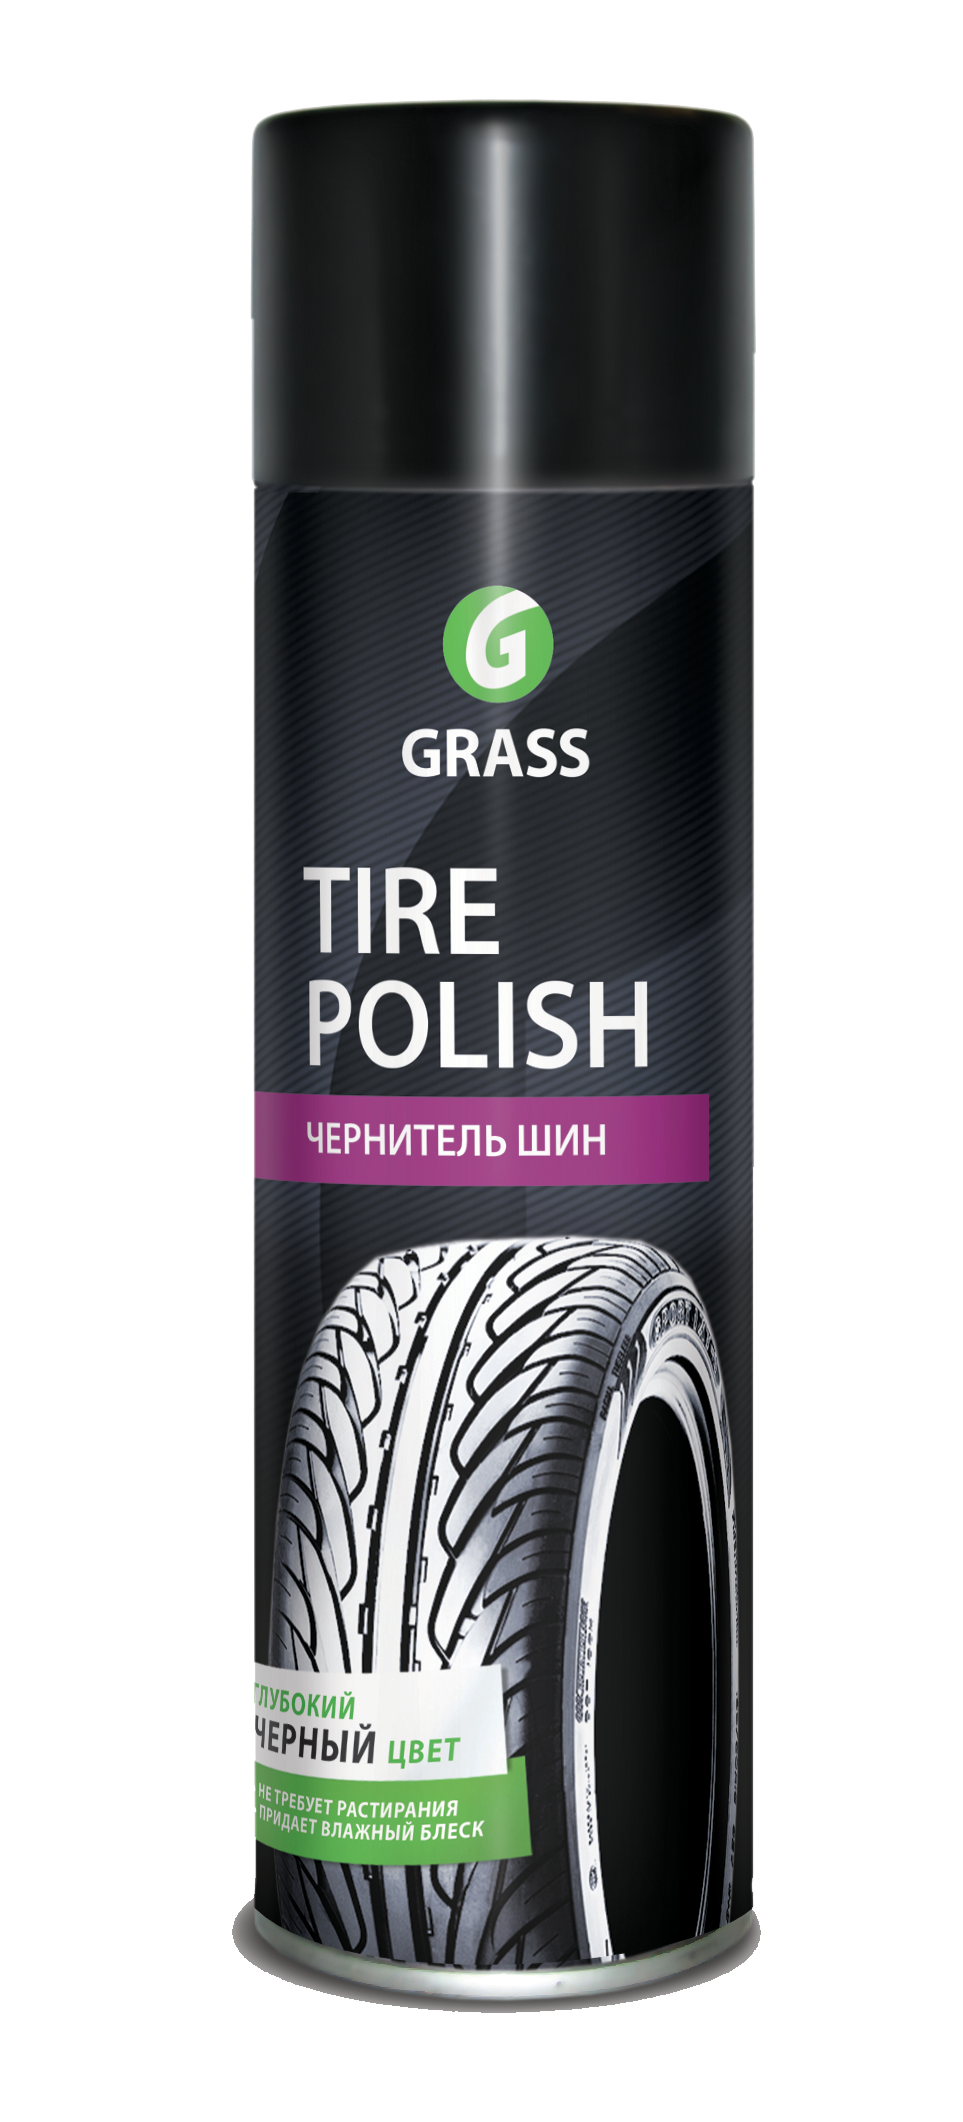 Чернитель шин "Tire Polish" (650 мл)